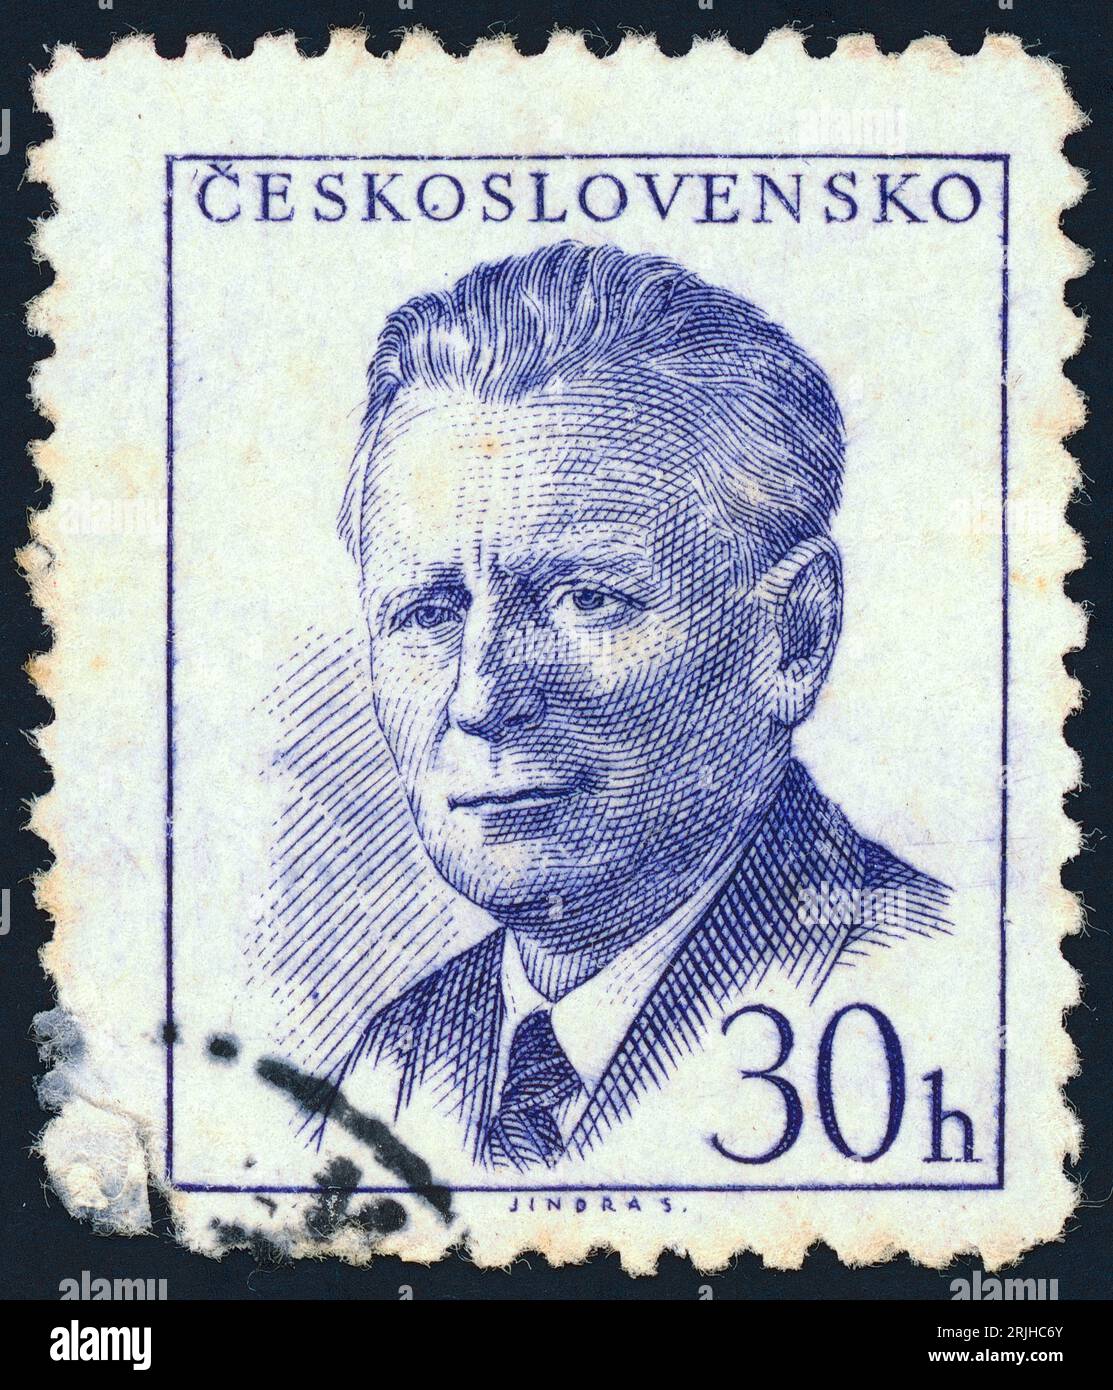 Antonín Novotný (1904 – 1975). Francobollo emesso in Cecoslovacchia nel 1958. Antonín Josef Novotný fu primo segretario del Partito Comunista di Cecoslovacchia dal 1953 al 1968, e ricoprì anche la carica di presidente della Cecoslovacchia dal 1957 al 1968. Foto Stock